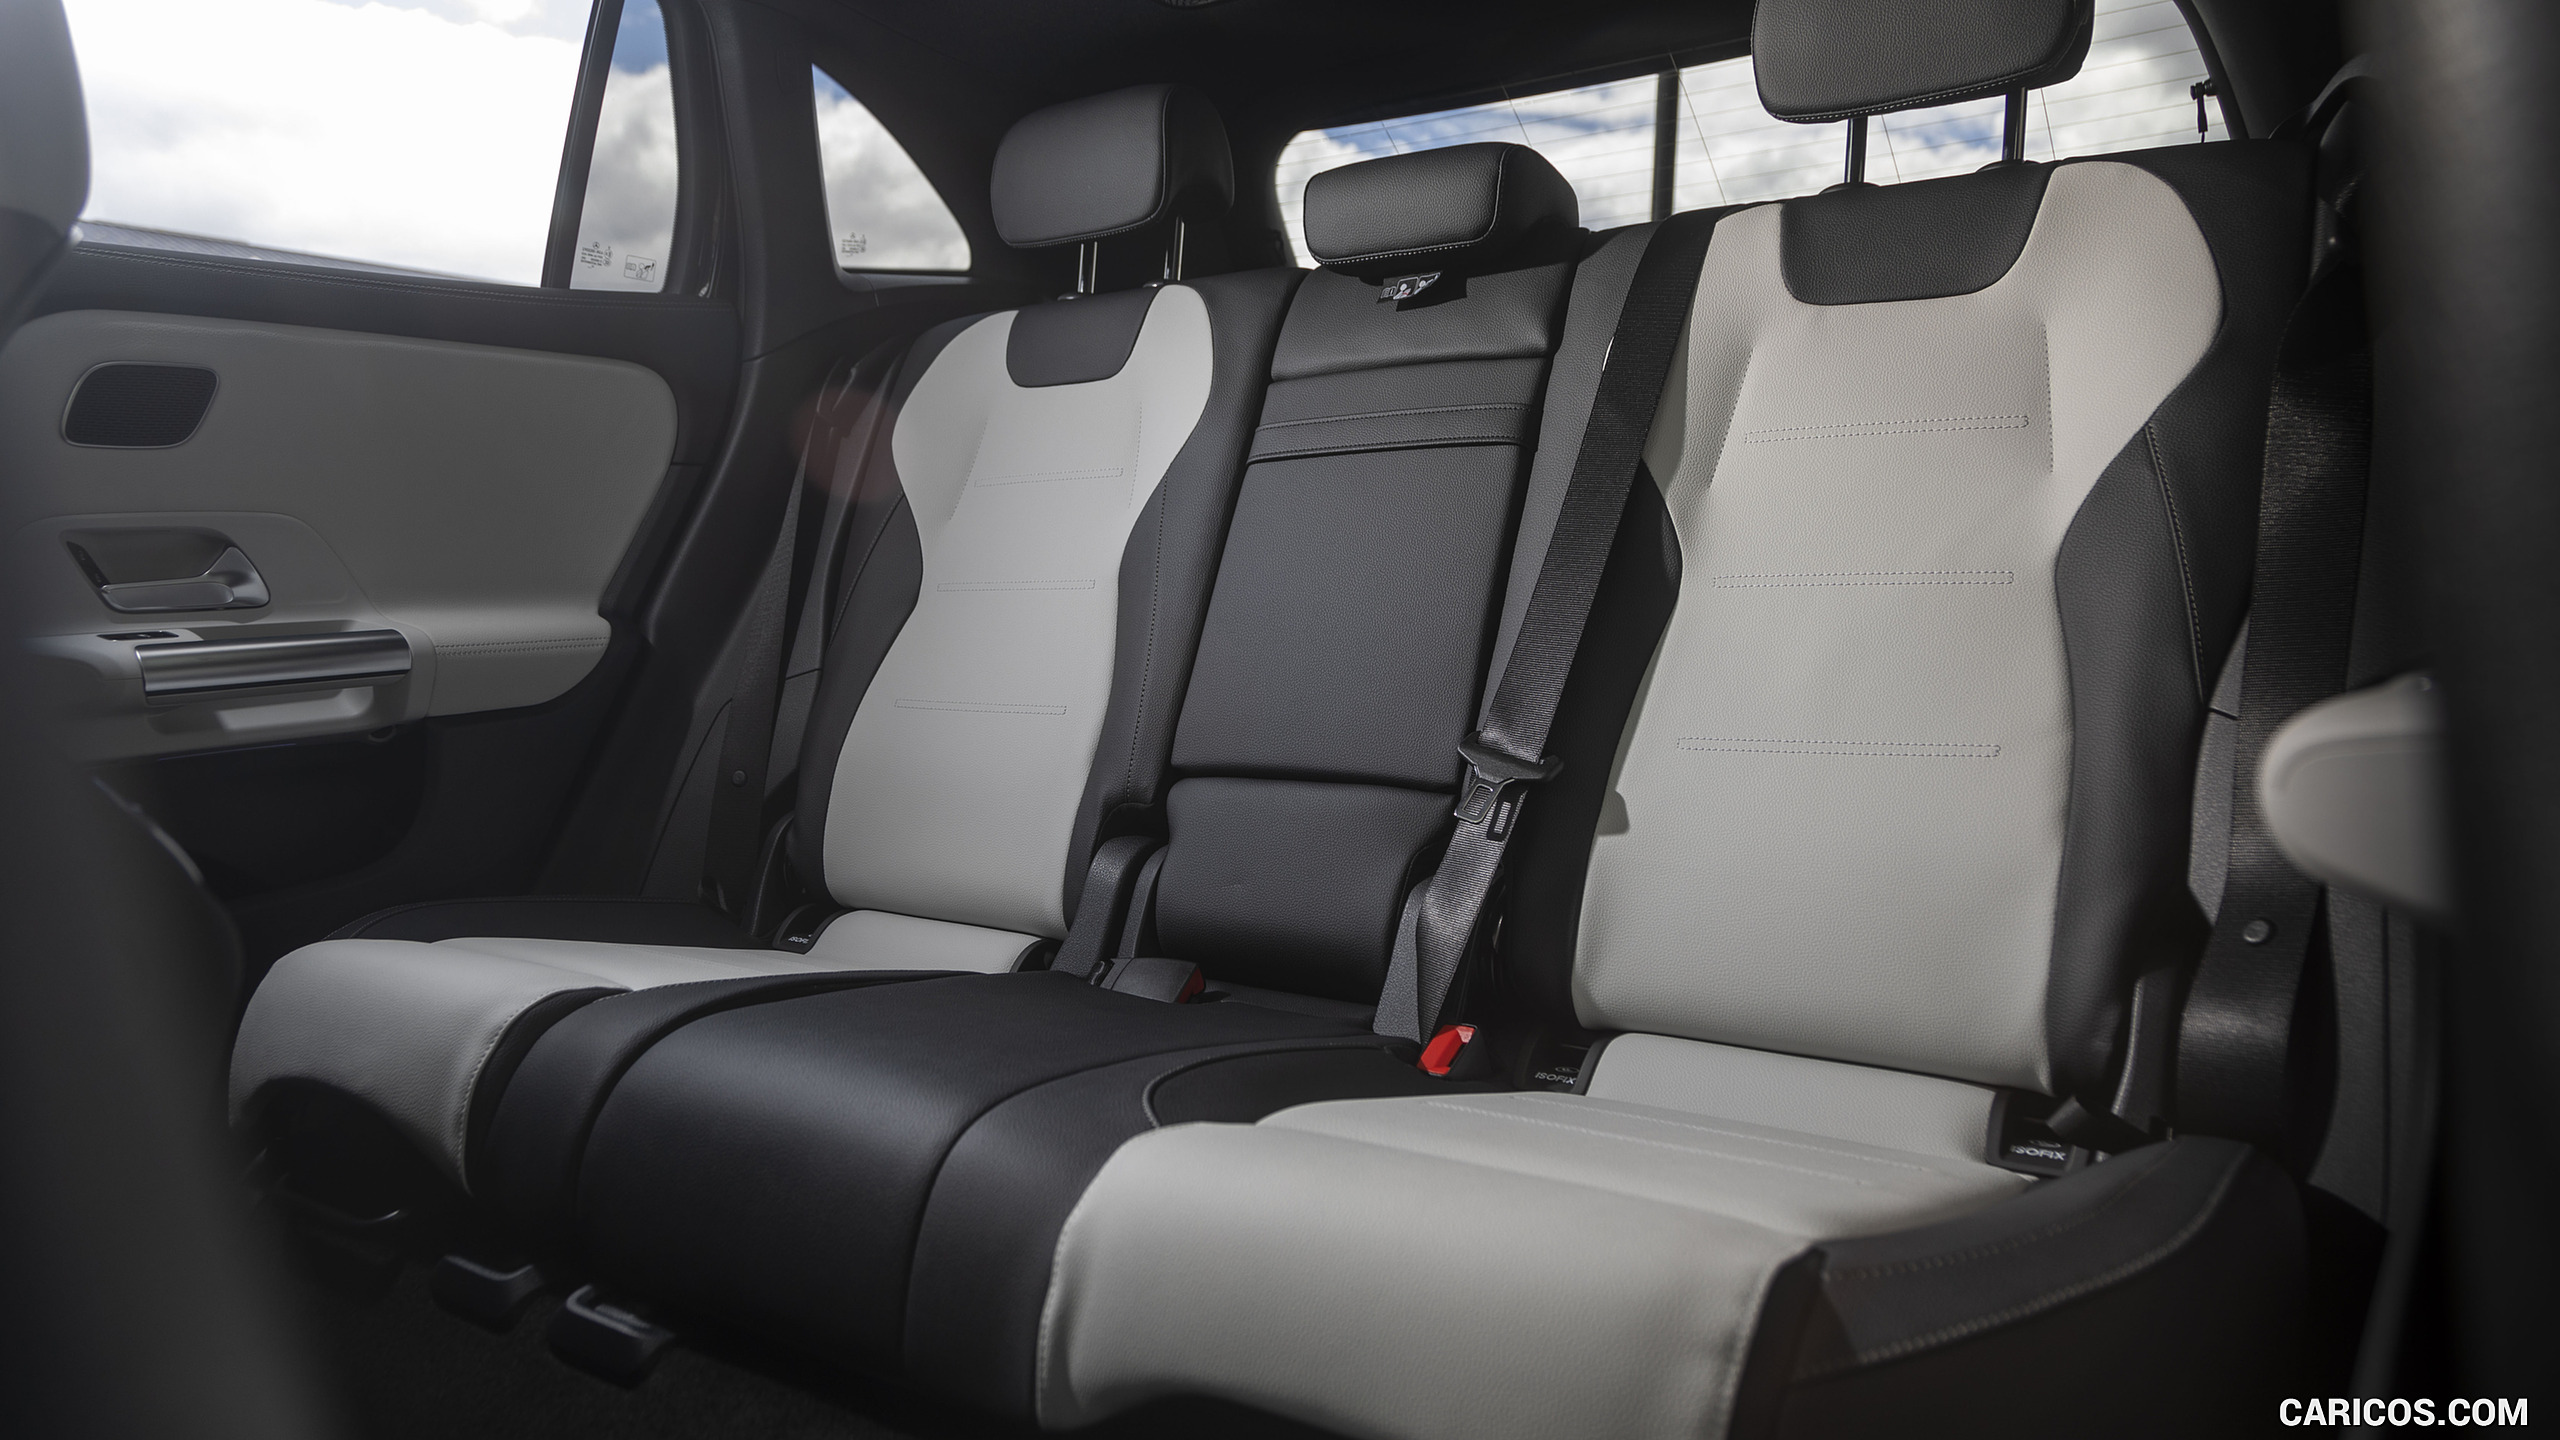 2021 Mercedes-Benz GLA 250 4MATIC (US-Spec) - Interior, Rear Seats, #268 of 280